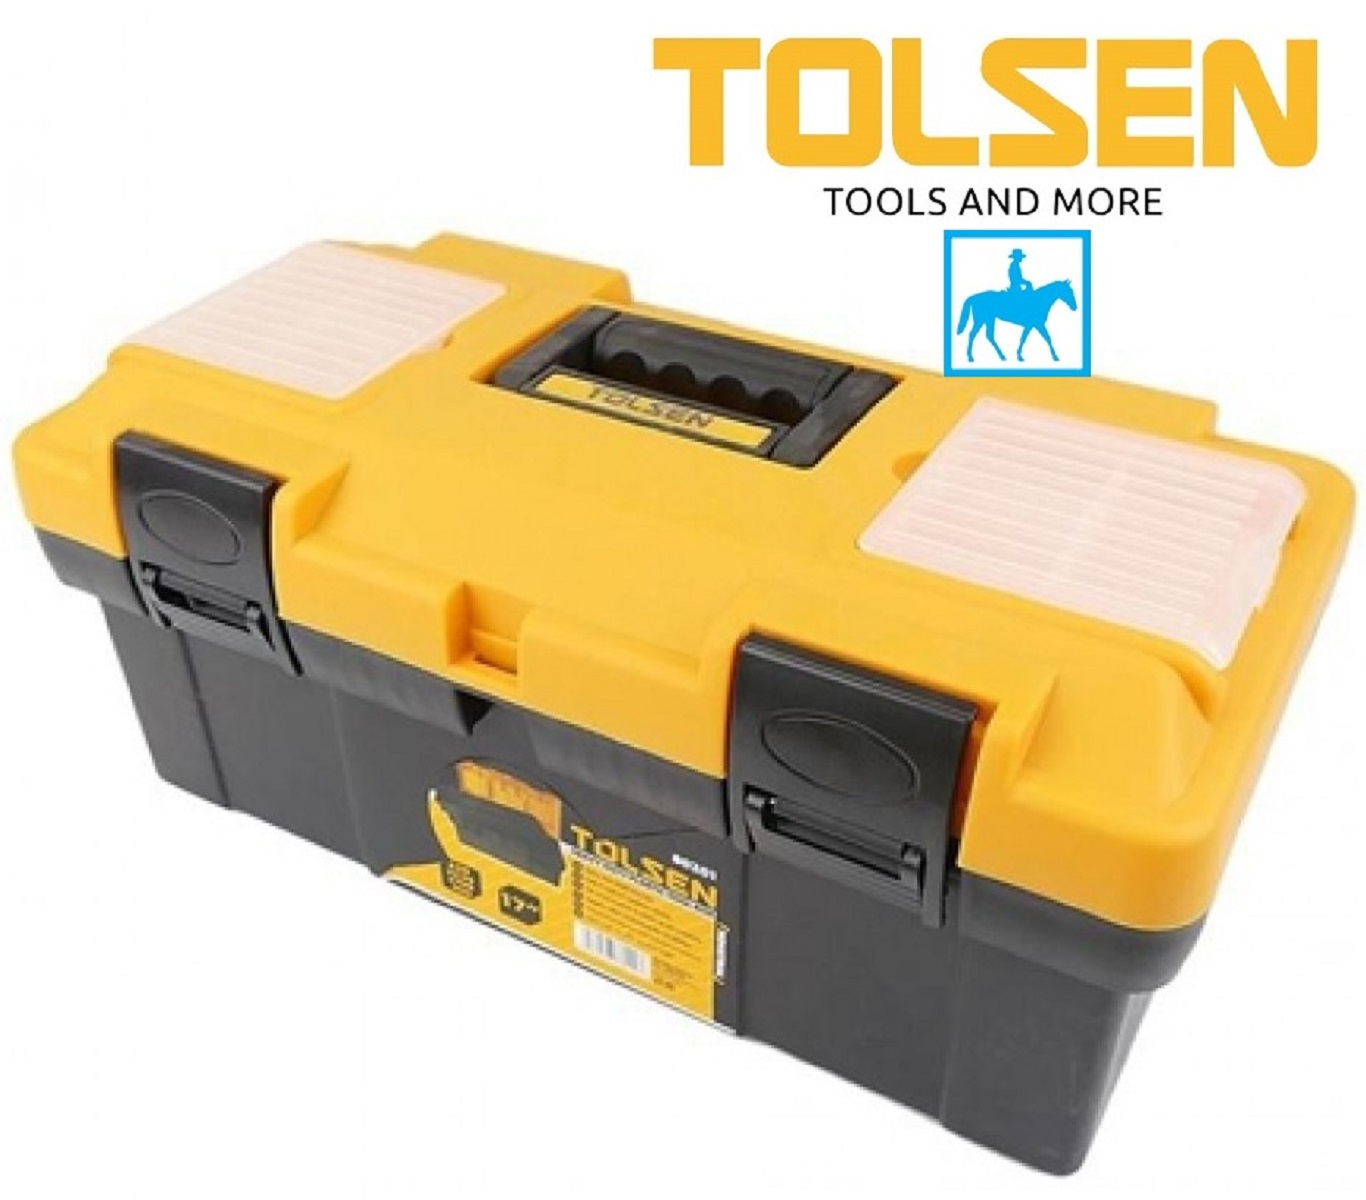 Hình ảnh 1 của mặt hàng Thùng đồ nghề lớn TOLSEN 80201